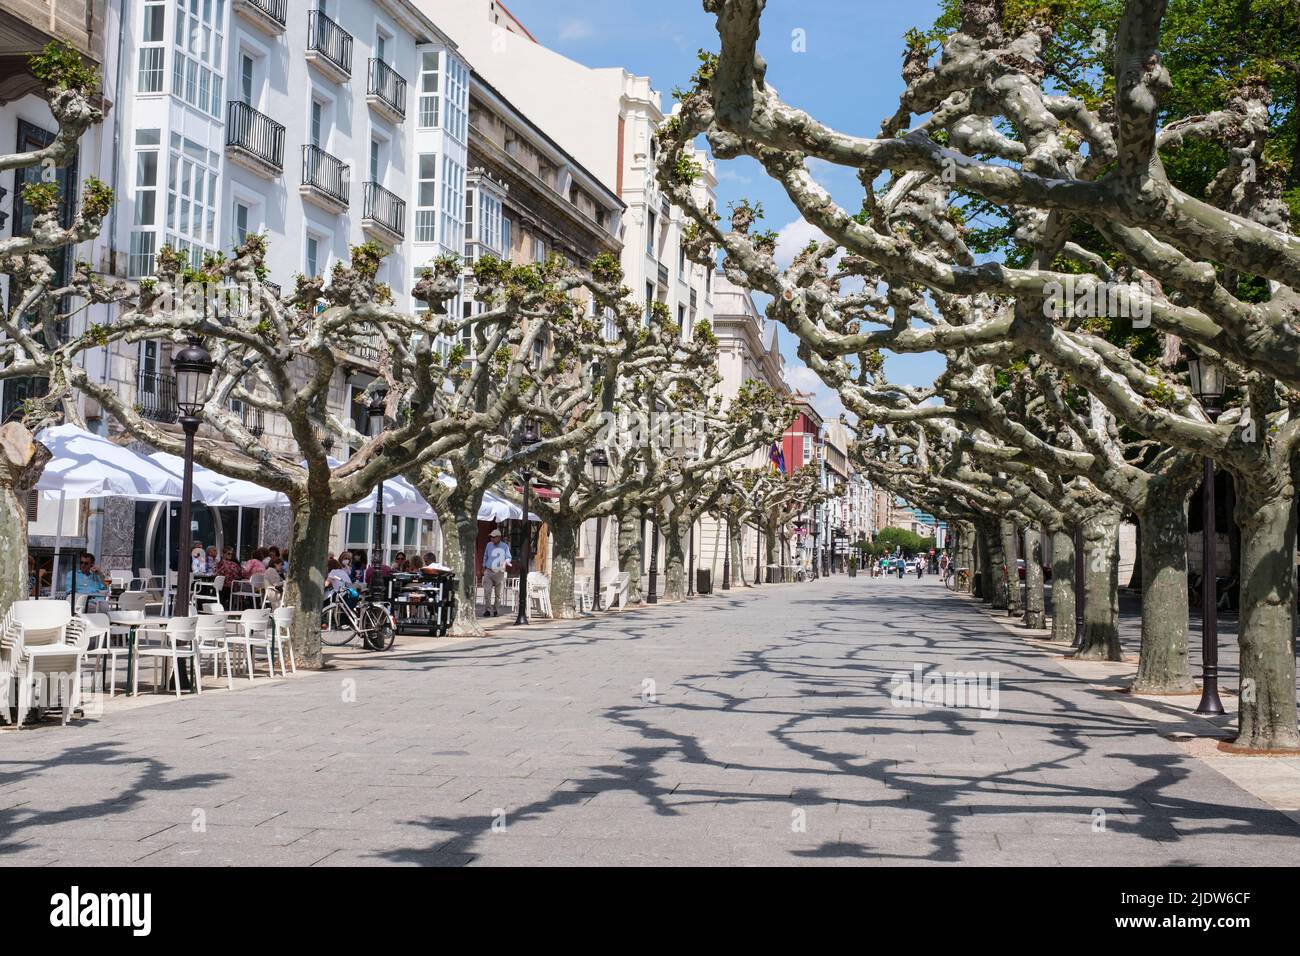 Spagna, Burgos. London Planetrees, Platanus x acerifolia. Foto Stock